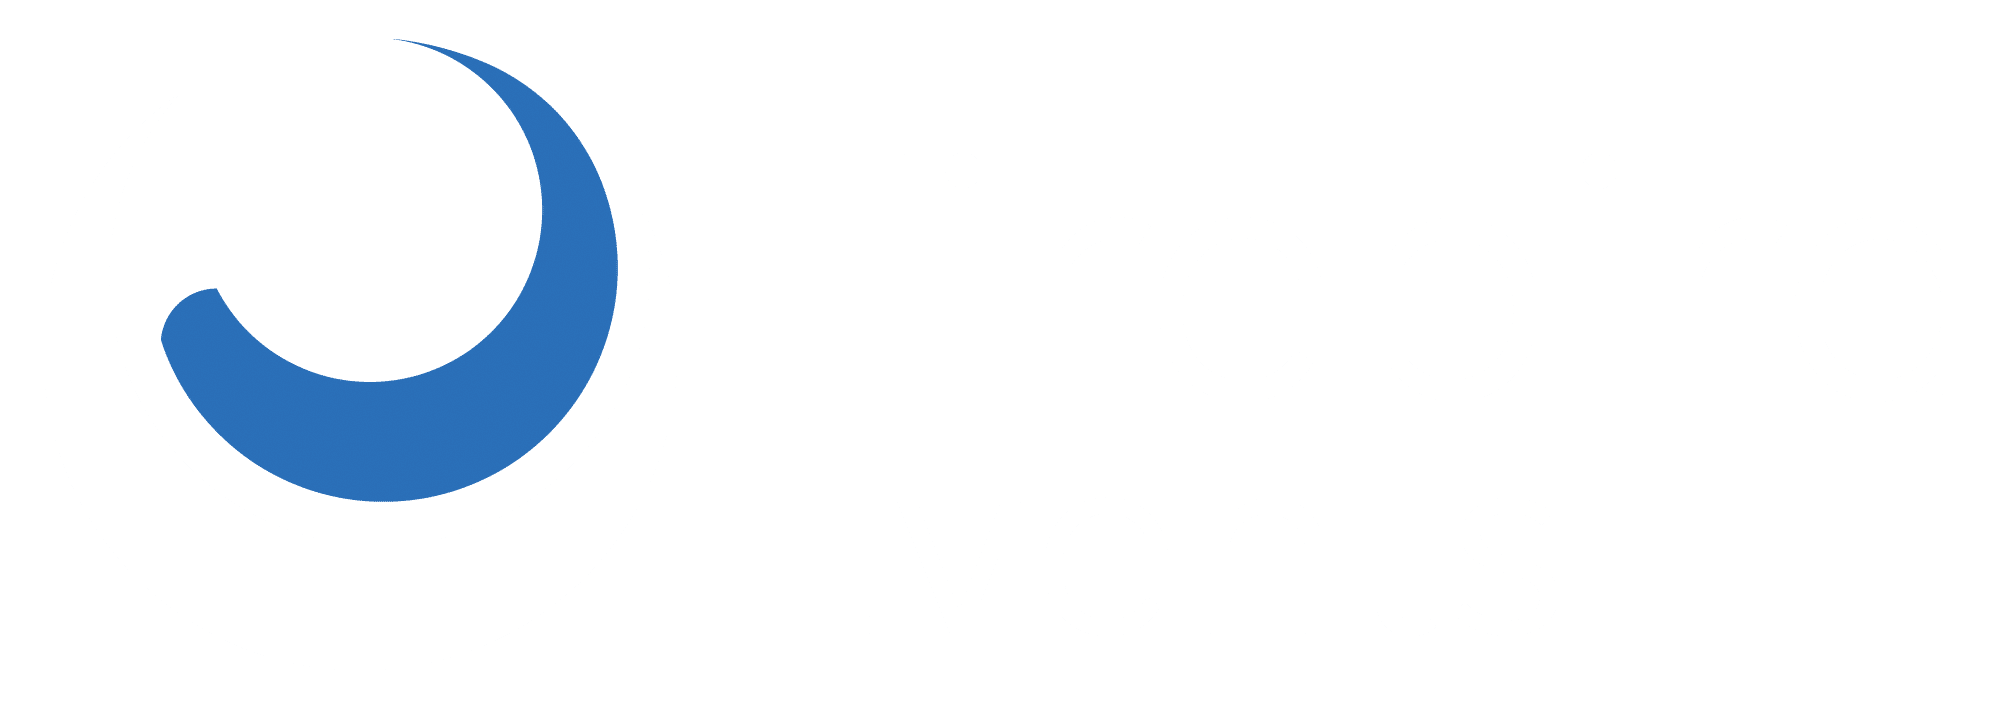 Firebird Events